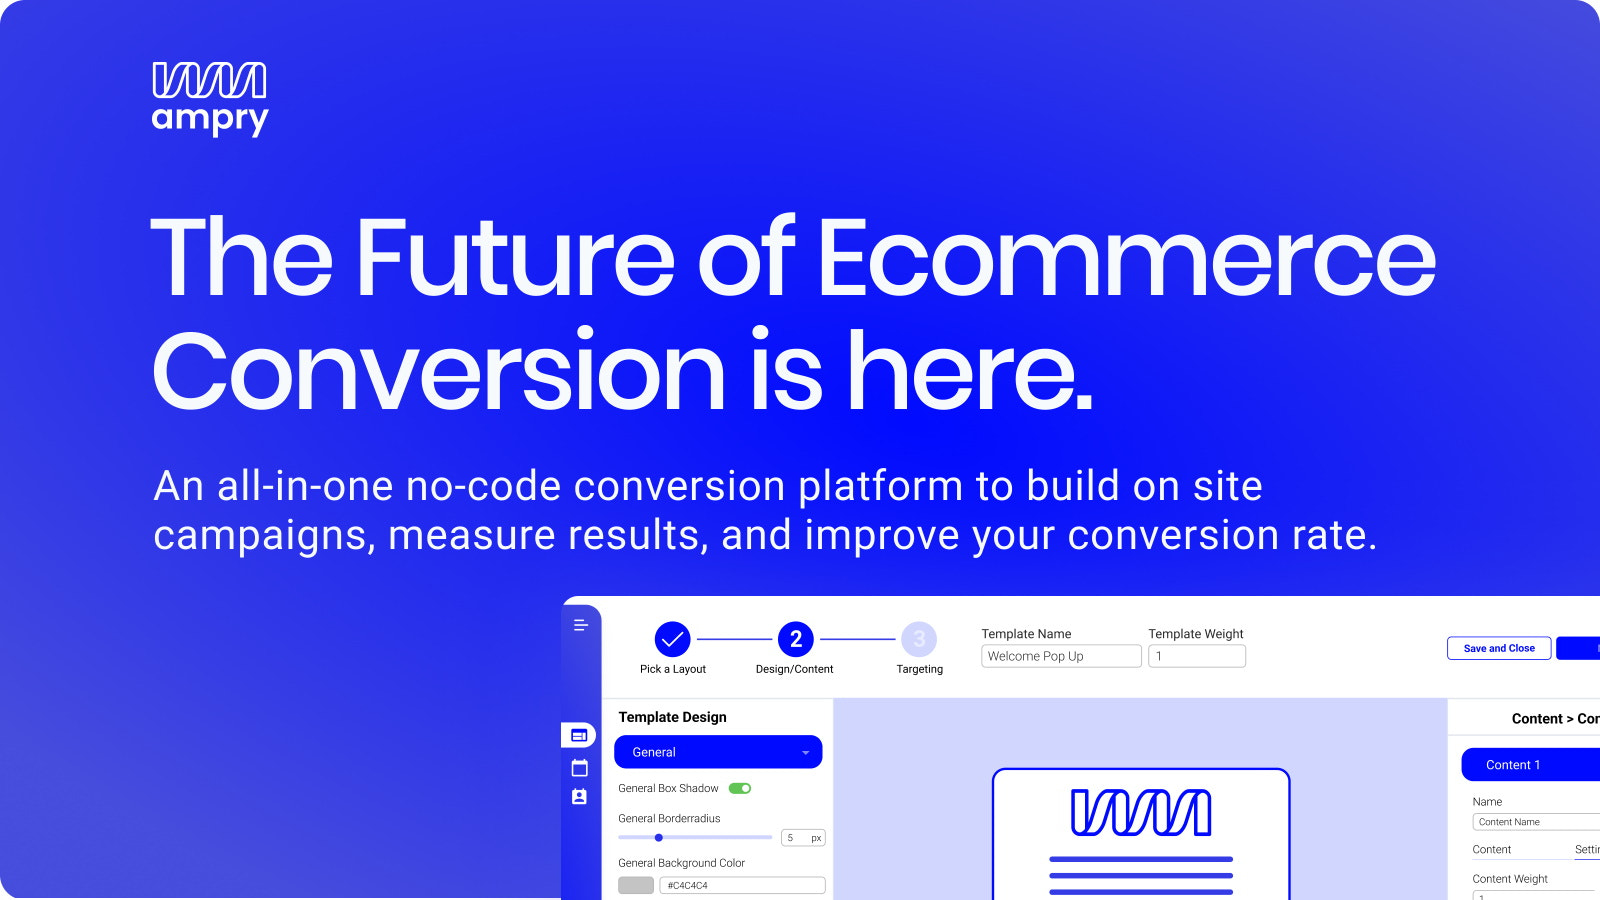 L'avenir de la conversion Ecommerce est ici.